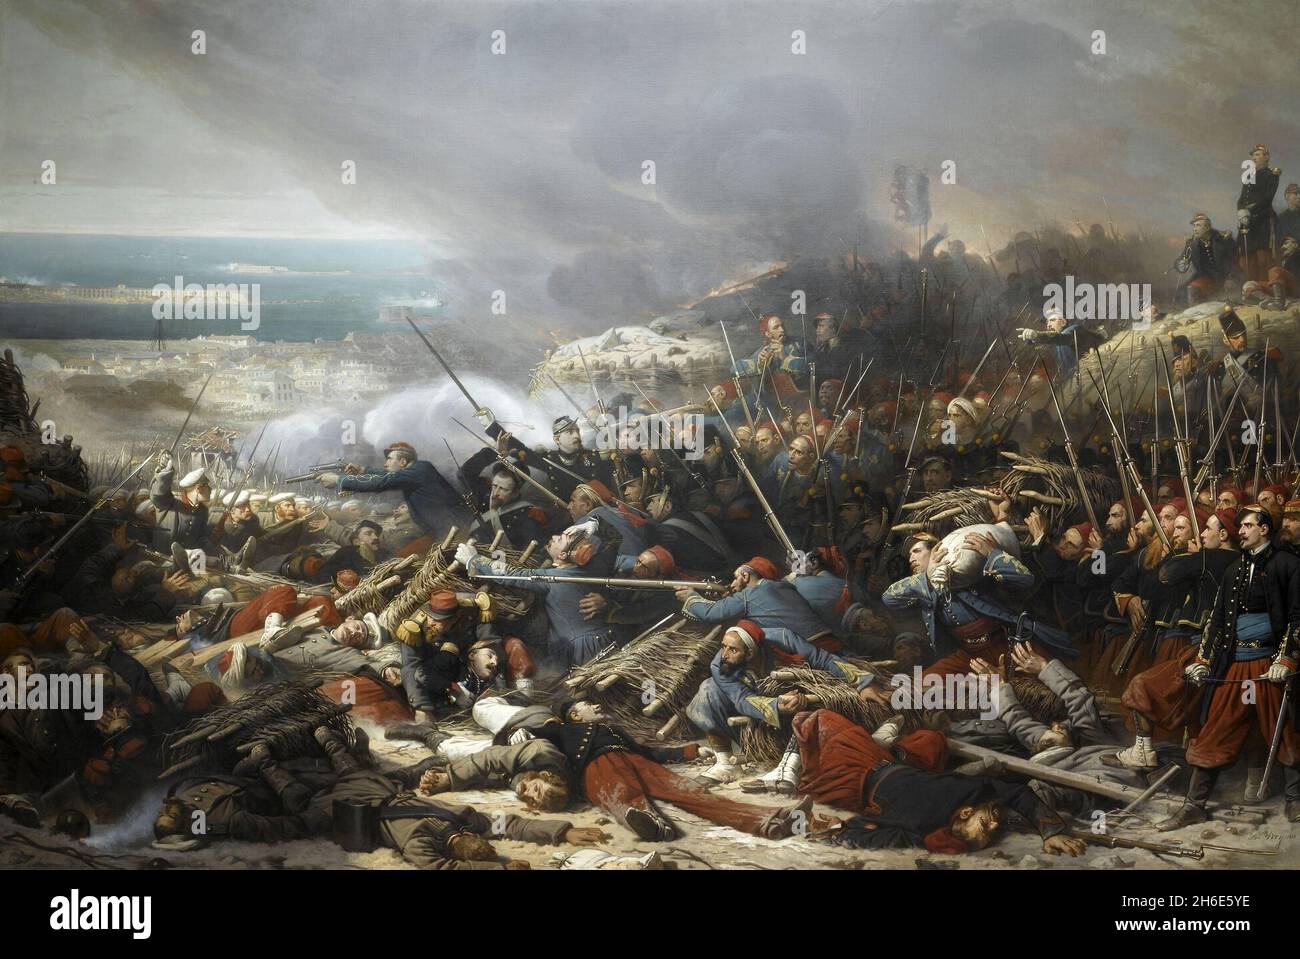 Les Français attaquent l'armée russe à la bataille de Malakoff, siège de Sébastopol, Guerre de Crimée. Un tableau d'Adolphe Yvon.La bataille de Malakoff était une attaque française contre les forces russes sur la redoute de Malakoff et sa capture ultérieure le 8 septembre 1855 dans le cadre du siège de Sébastopol pendant la guerre de Crimée.L'armée française sous le général MacMahon a réussi à s'attaquer à la redoute de Malakoff, tandis qu'une attaque britannique simultanée sur la Redan au sud de la Malakoff a été repoussée.Dans l'un des moments marquants de la guerre, le zouave français Eugène Libaut a levé le drapeau français au sommet de la guerre Banque D'Images